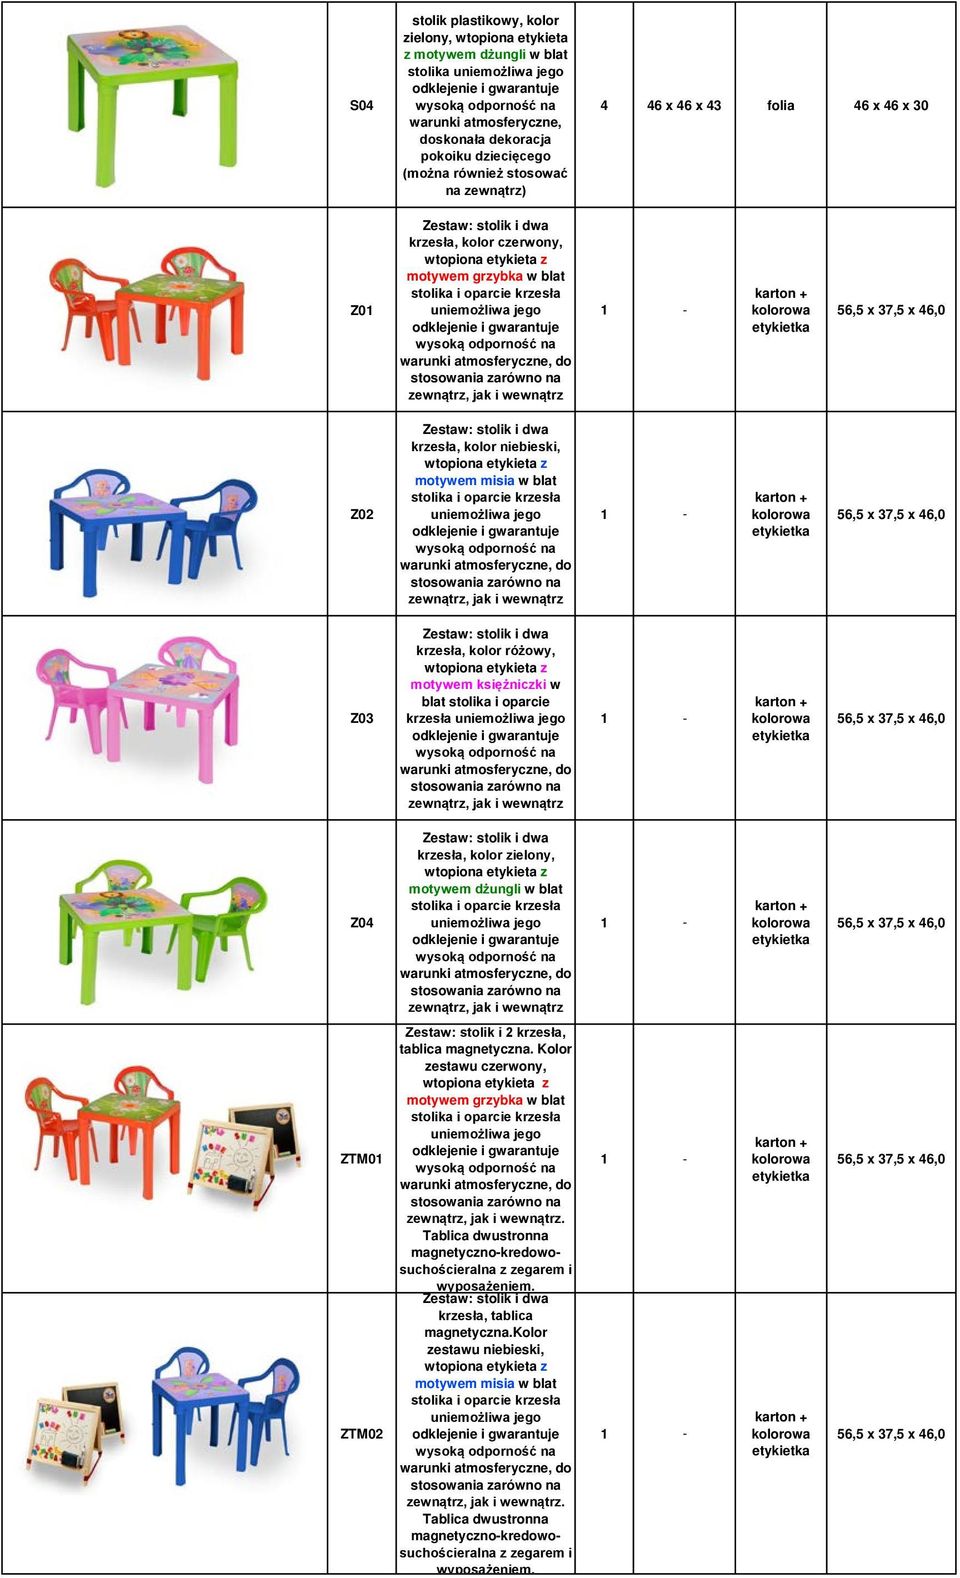 dwa krzesła, kolor różowy, motywem księżniczki w blat stolika i oparcie krzesła zewnątrz, jak i wewnątrz - Z04 Zestaw: stolik i dwa krzesła, kolor zielony, motywem dżungli w blat stolika i oparcie